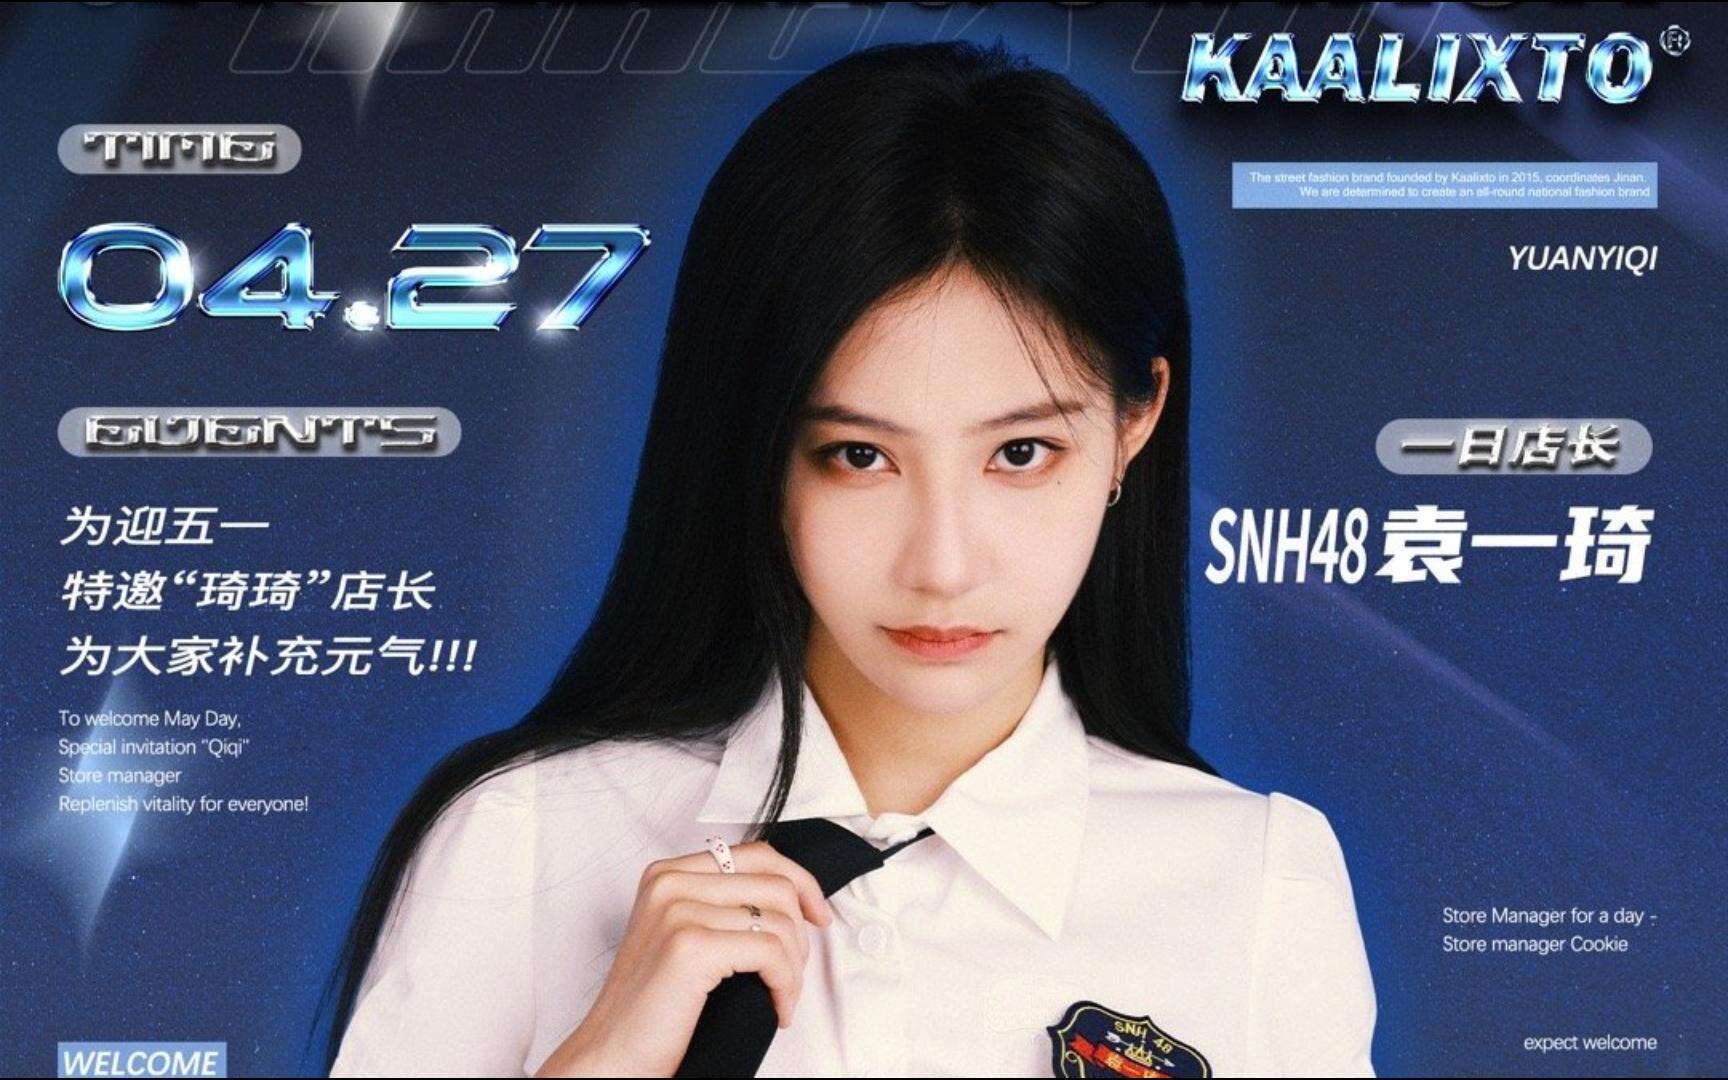 SNH48 - Yuan YiQi Promo with Kaalixto 20240427